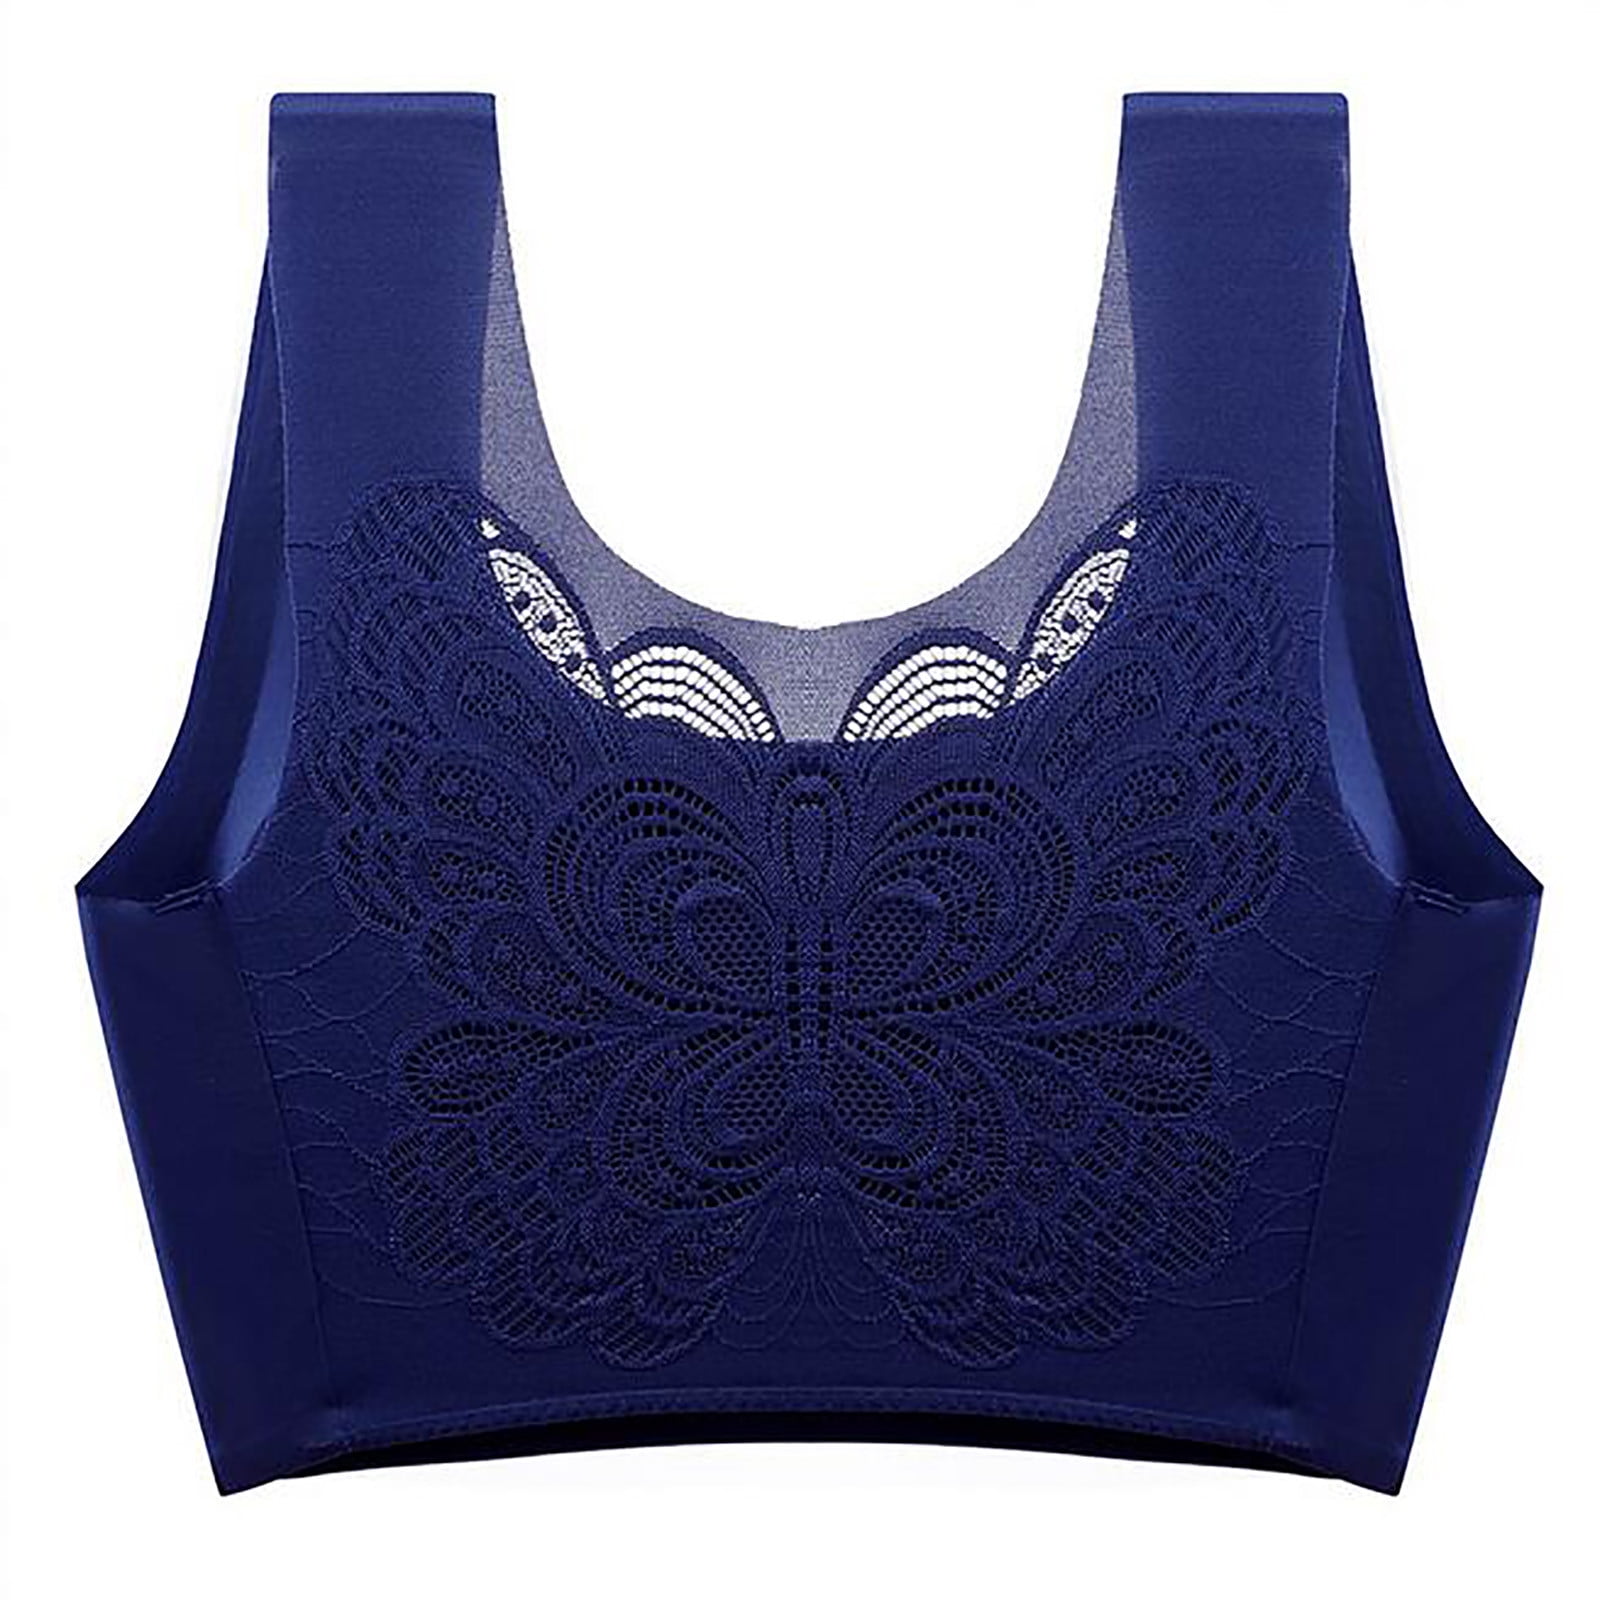 Rae Sports Bra - Olympia Blue  Athletic sports bras, Sports bra, 4 way  stretch fabric